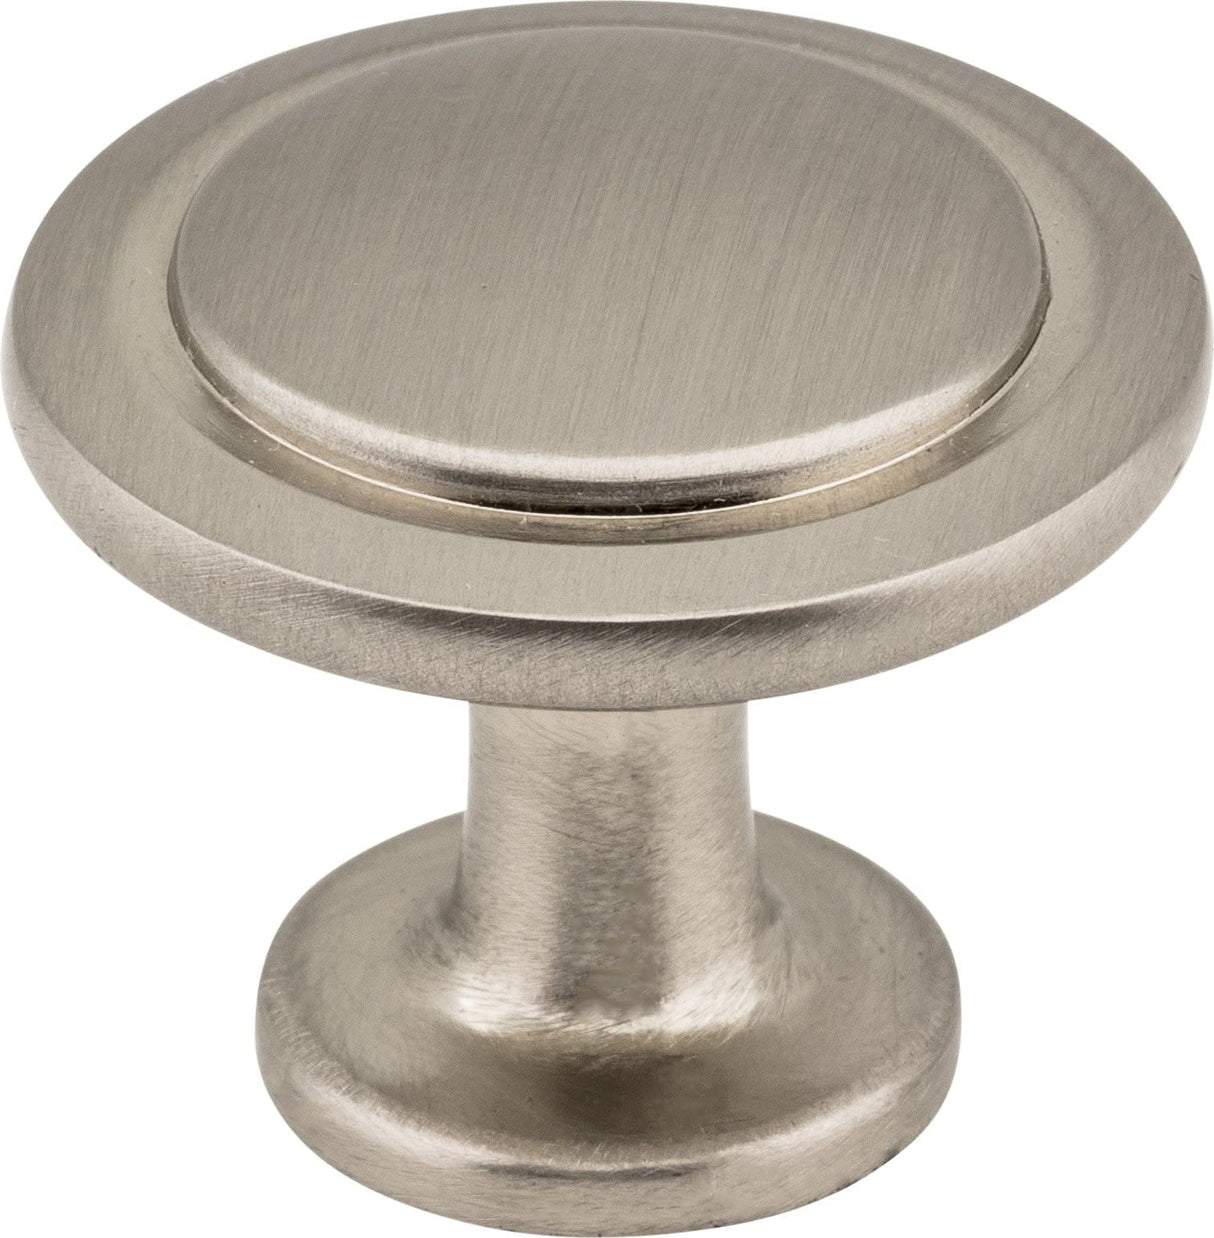 Elements 3960-SN 1-1/4" Diameter Satin Nickel Round Button Gatsby Cabinet Knob